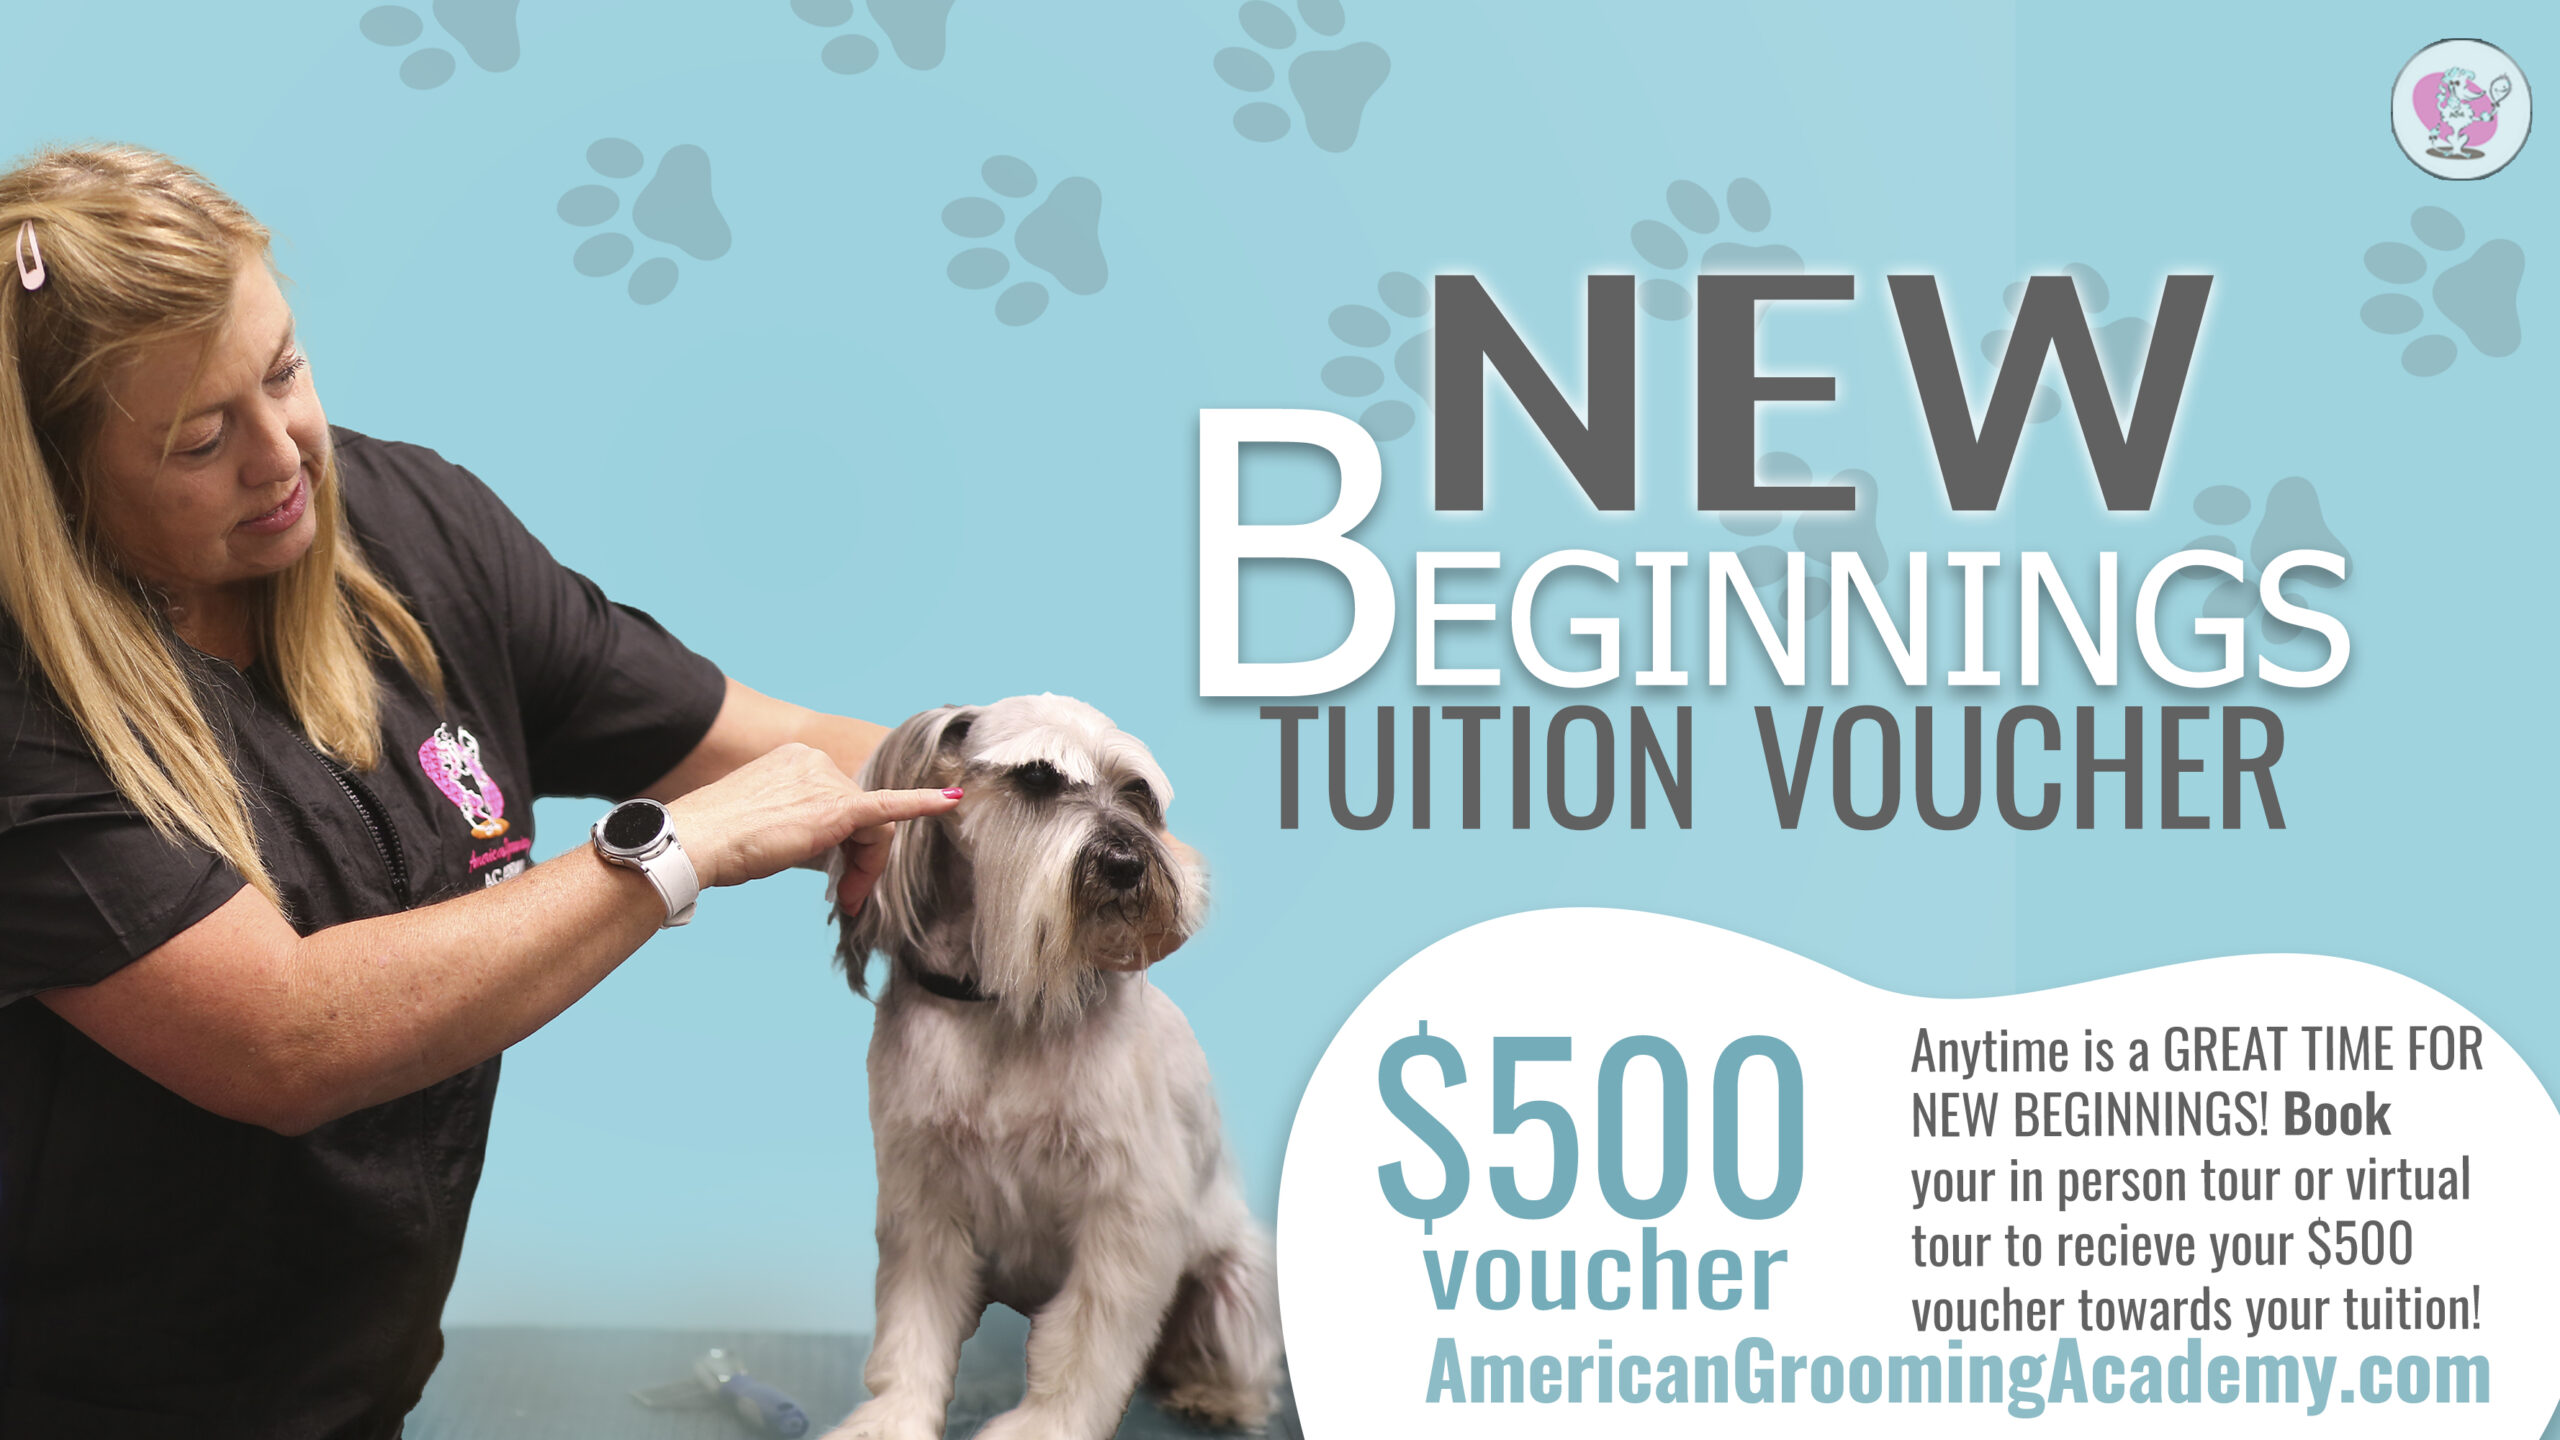 September - $500 Tuition Voucher